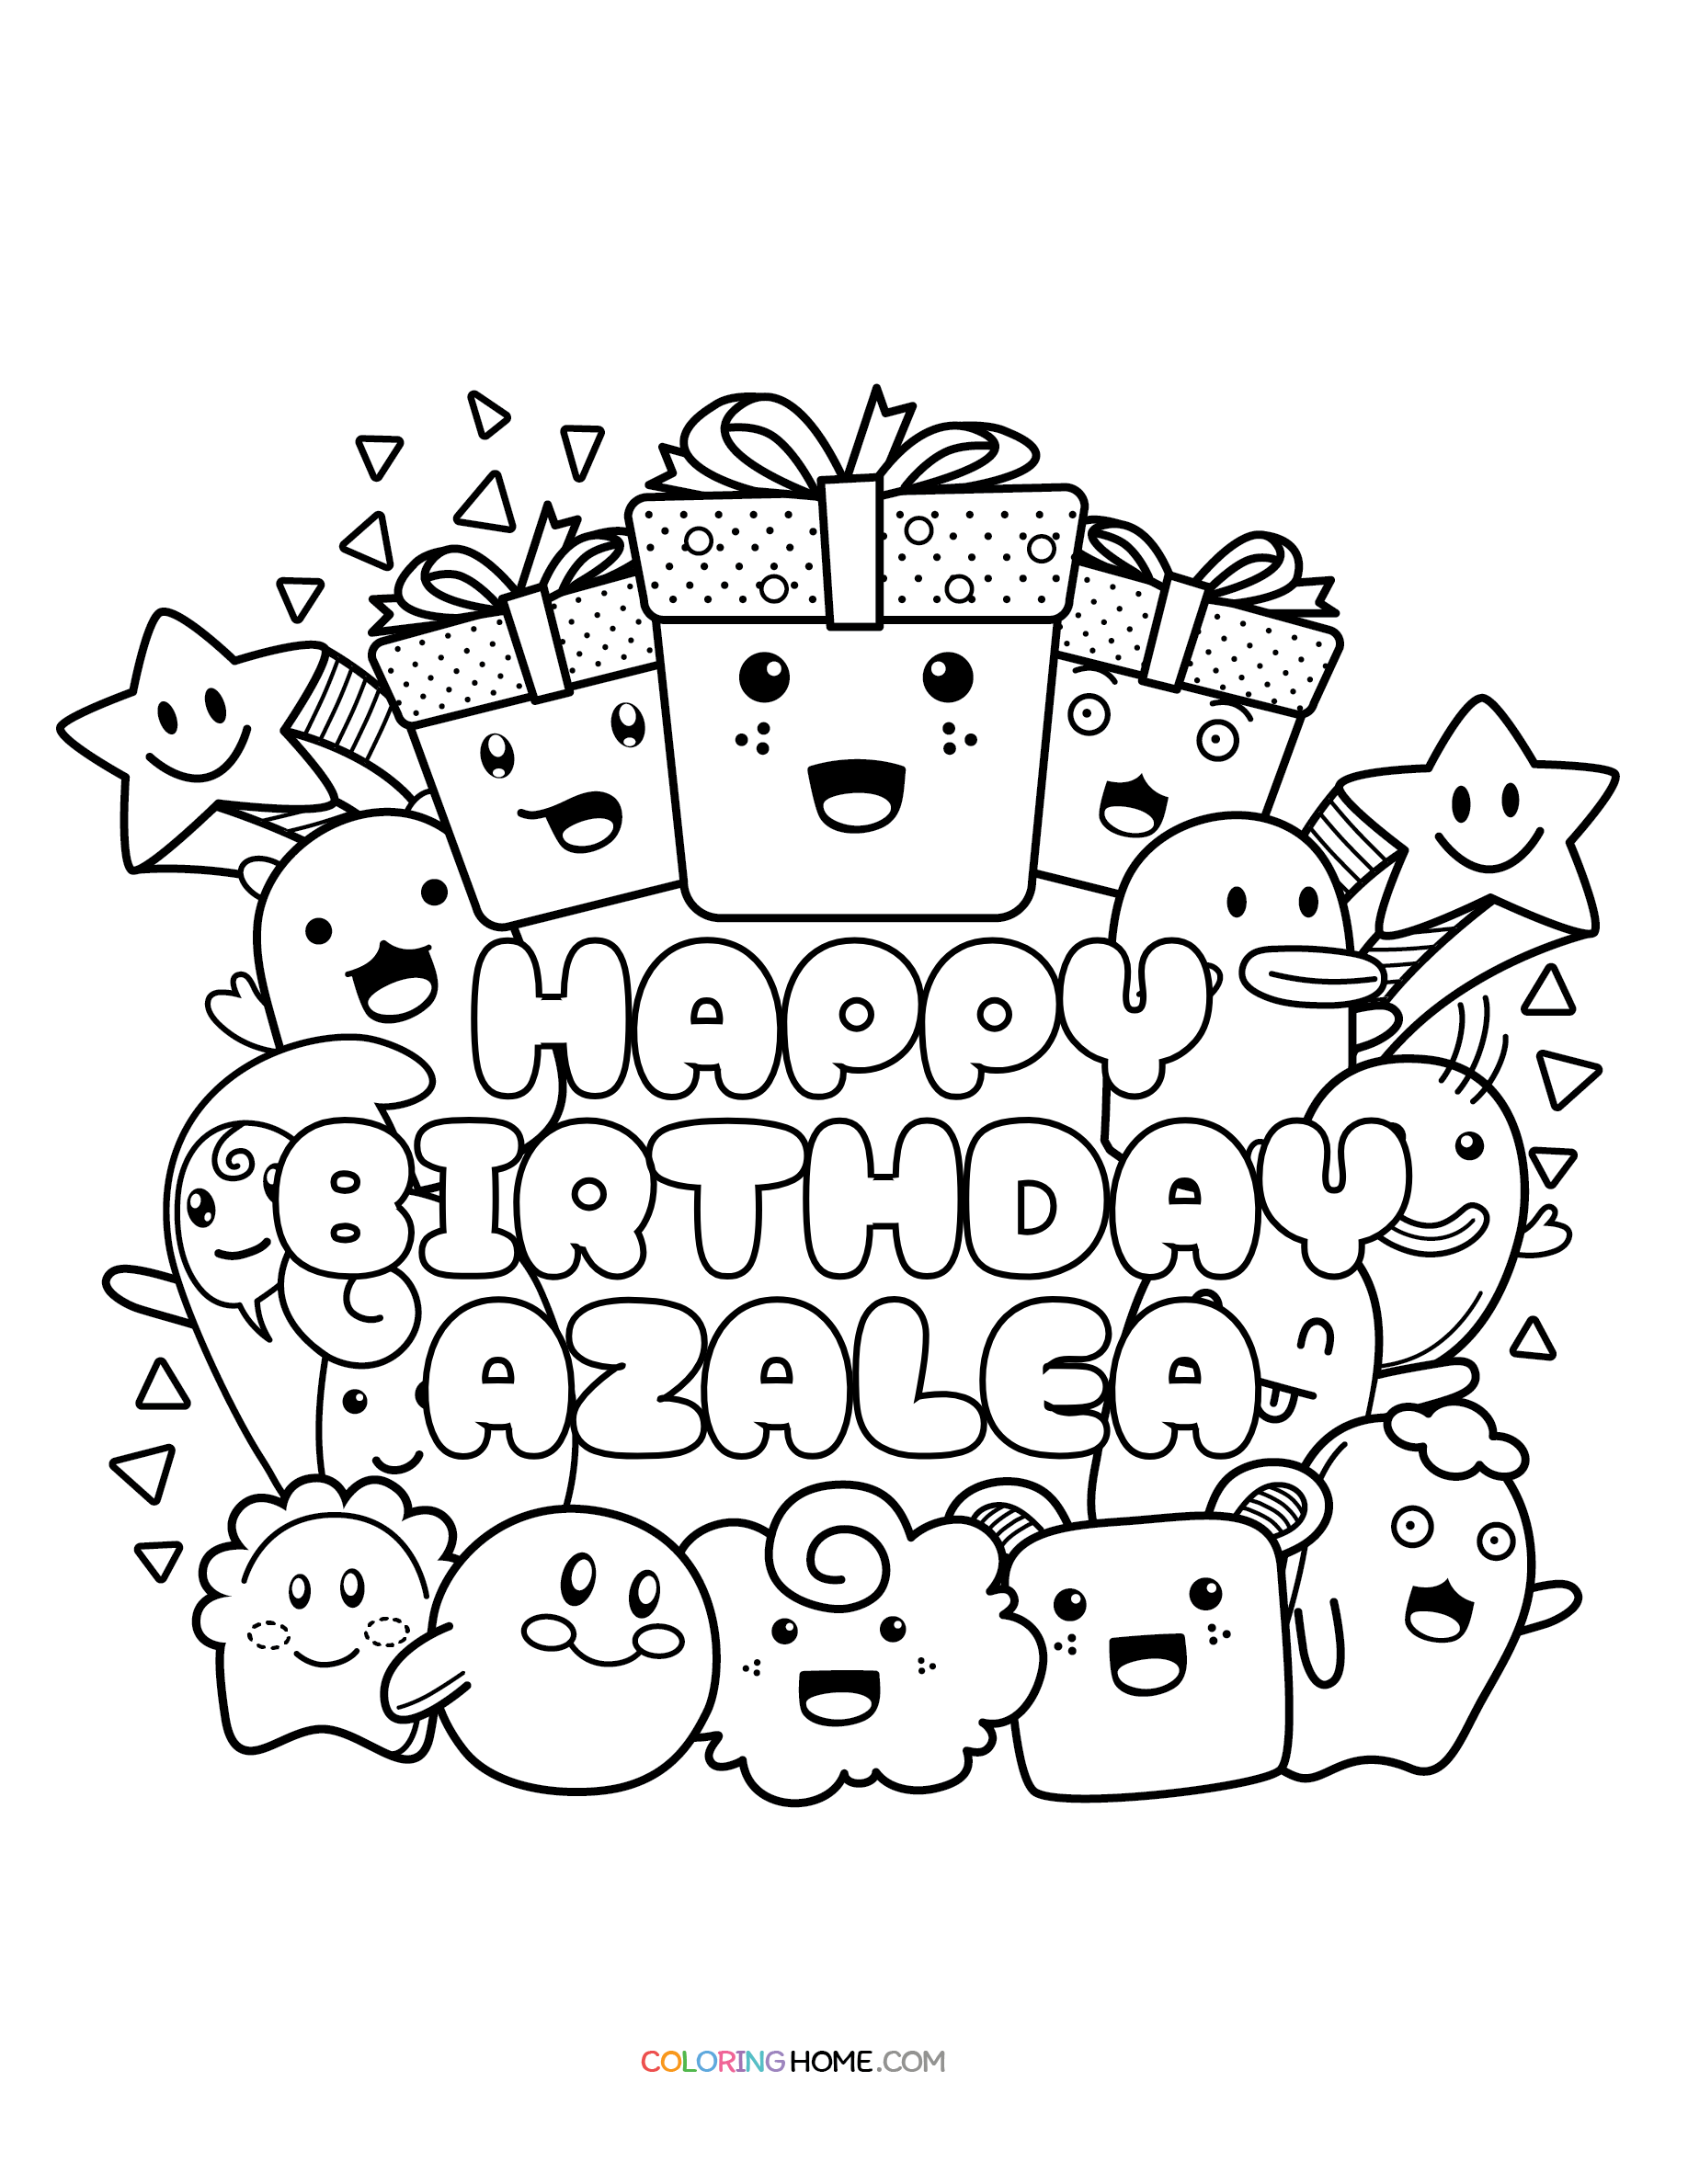 Happy Birthday Azalea coloring page